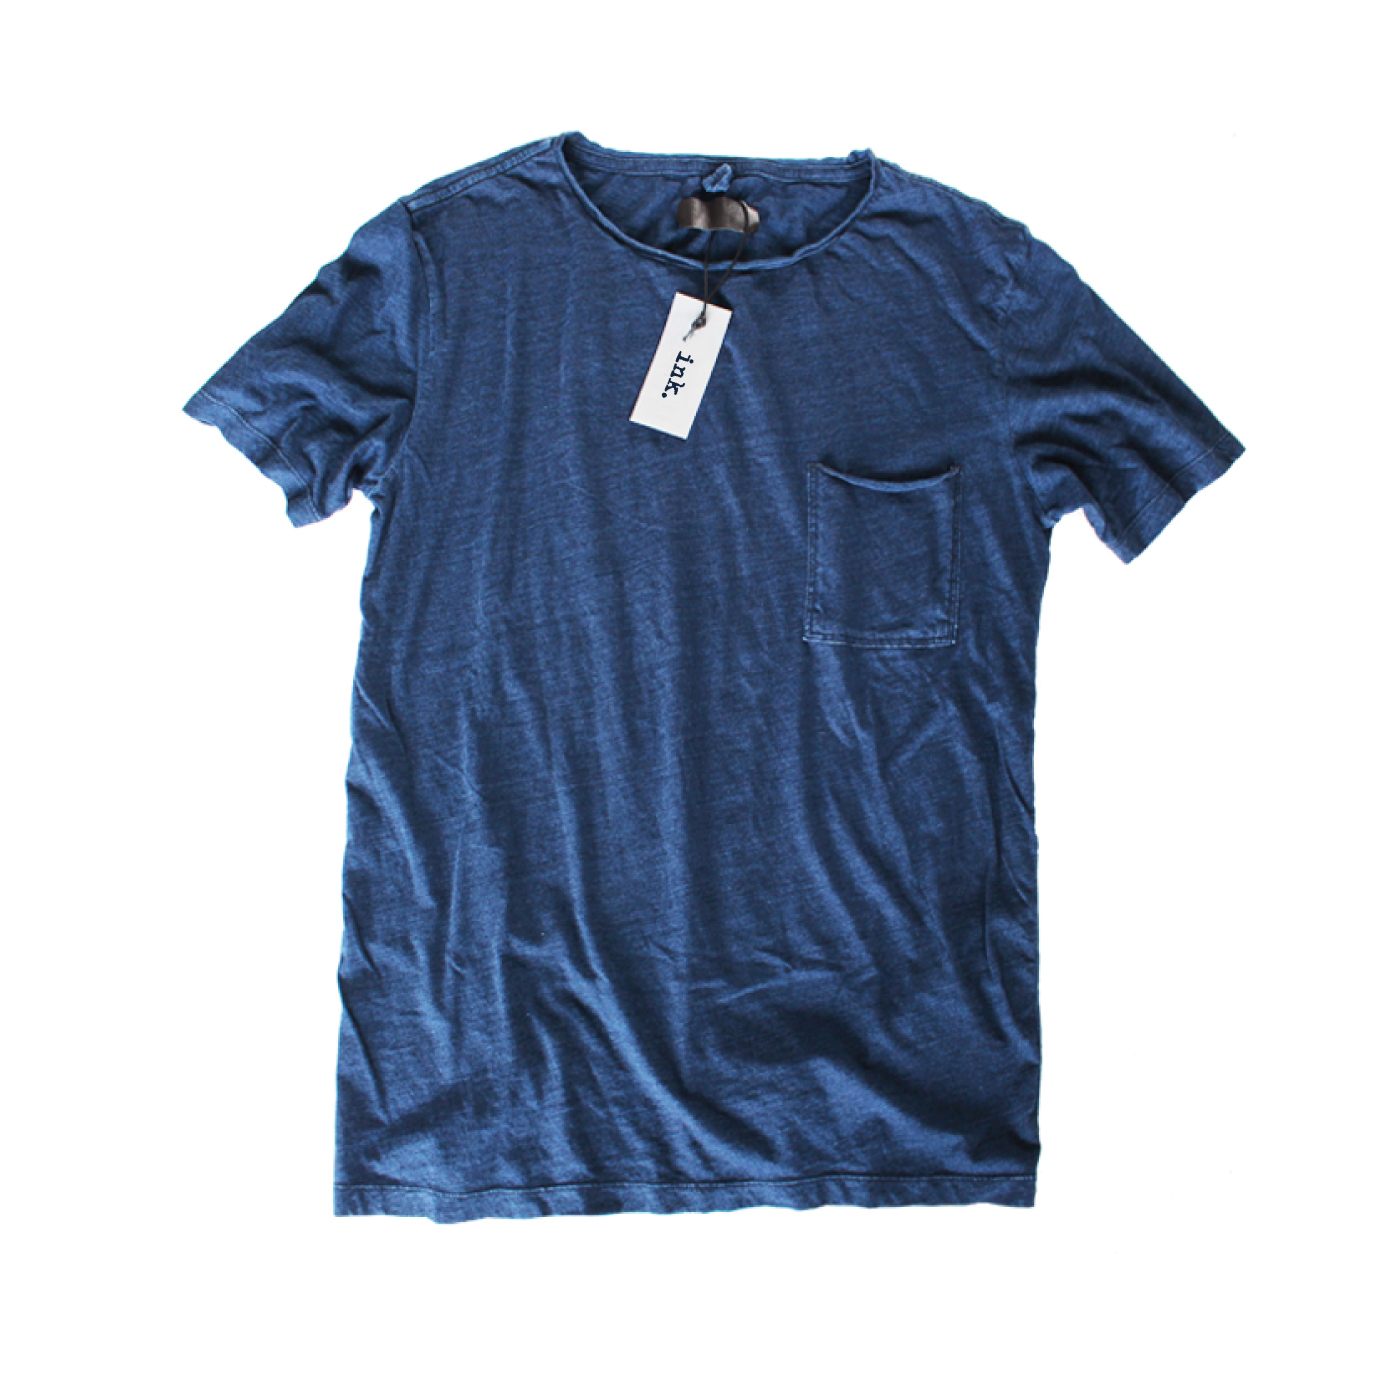 Klein-Indigo-T-shirt-with-pocket-1